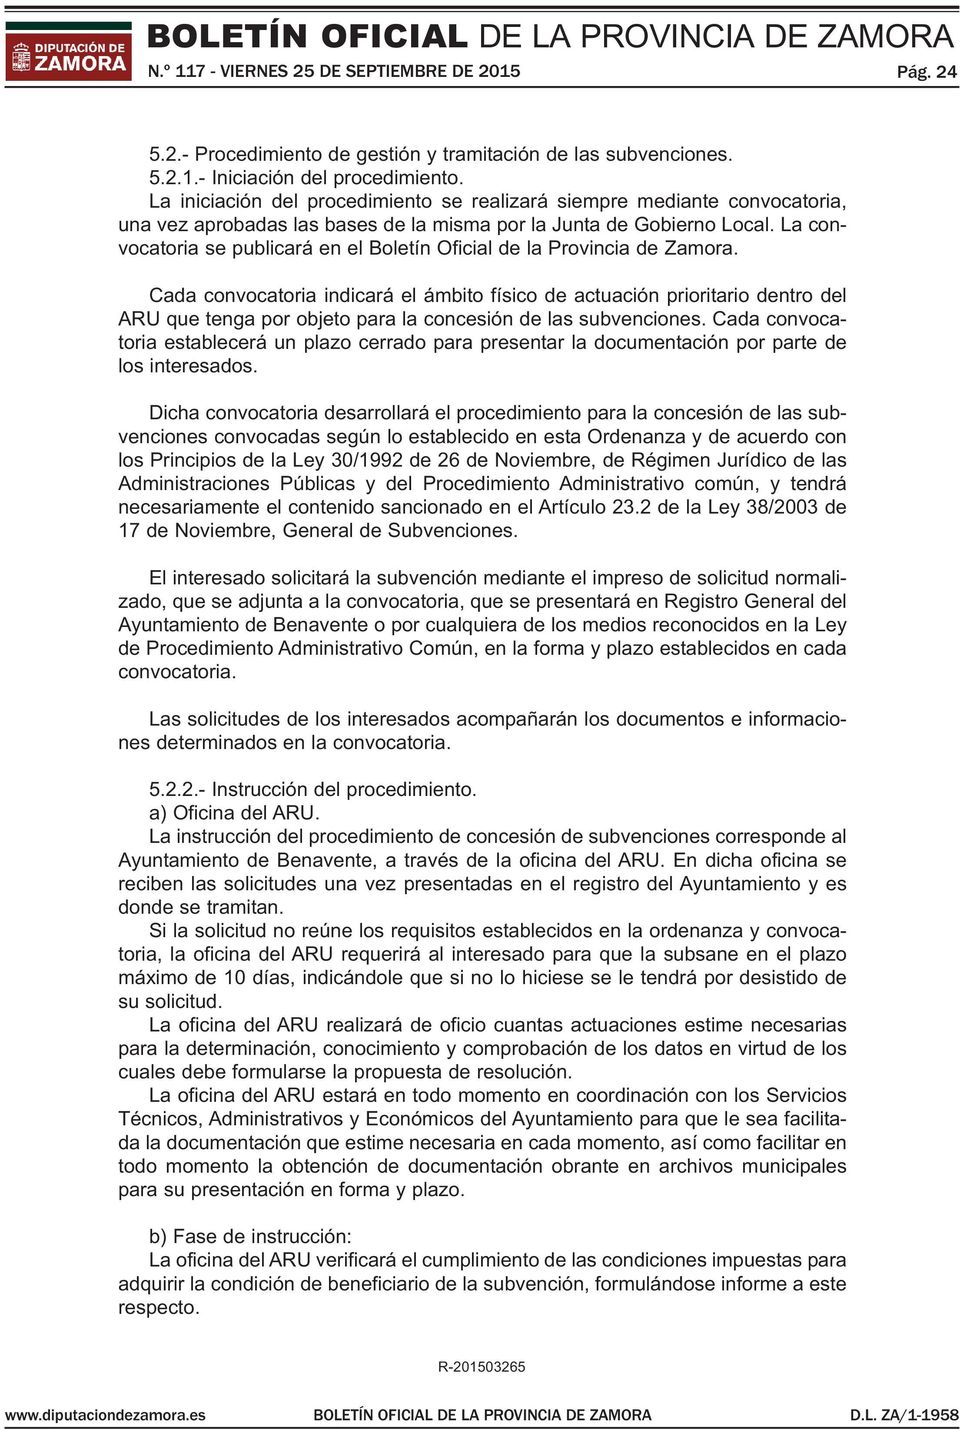 La convocatoria se publicará en el Boletín Oficial de la Provincia de Zamora.